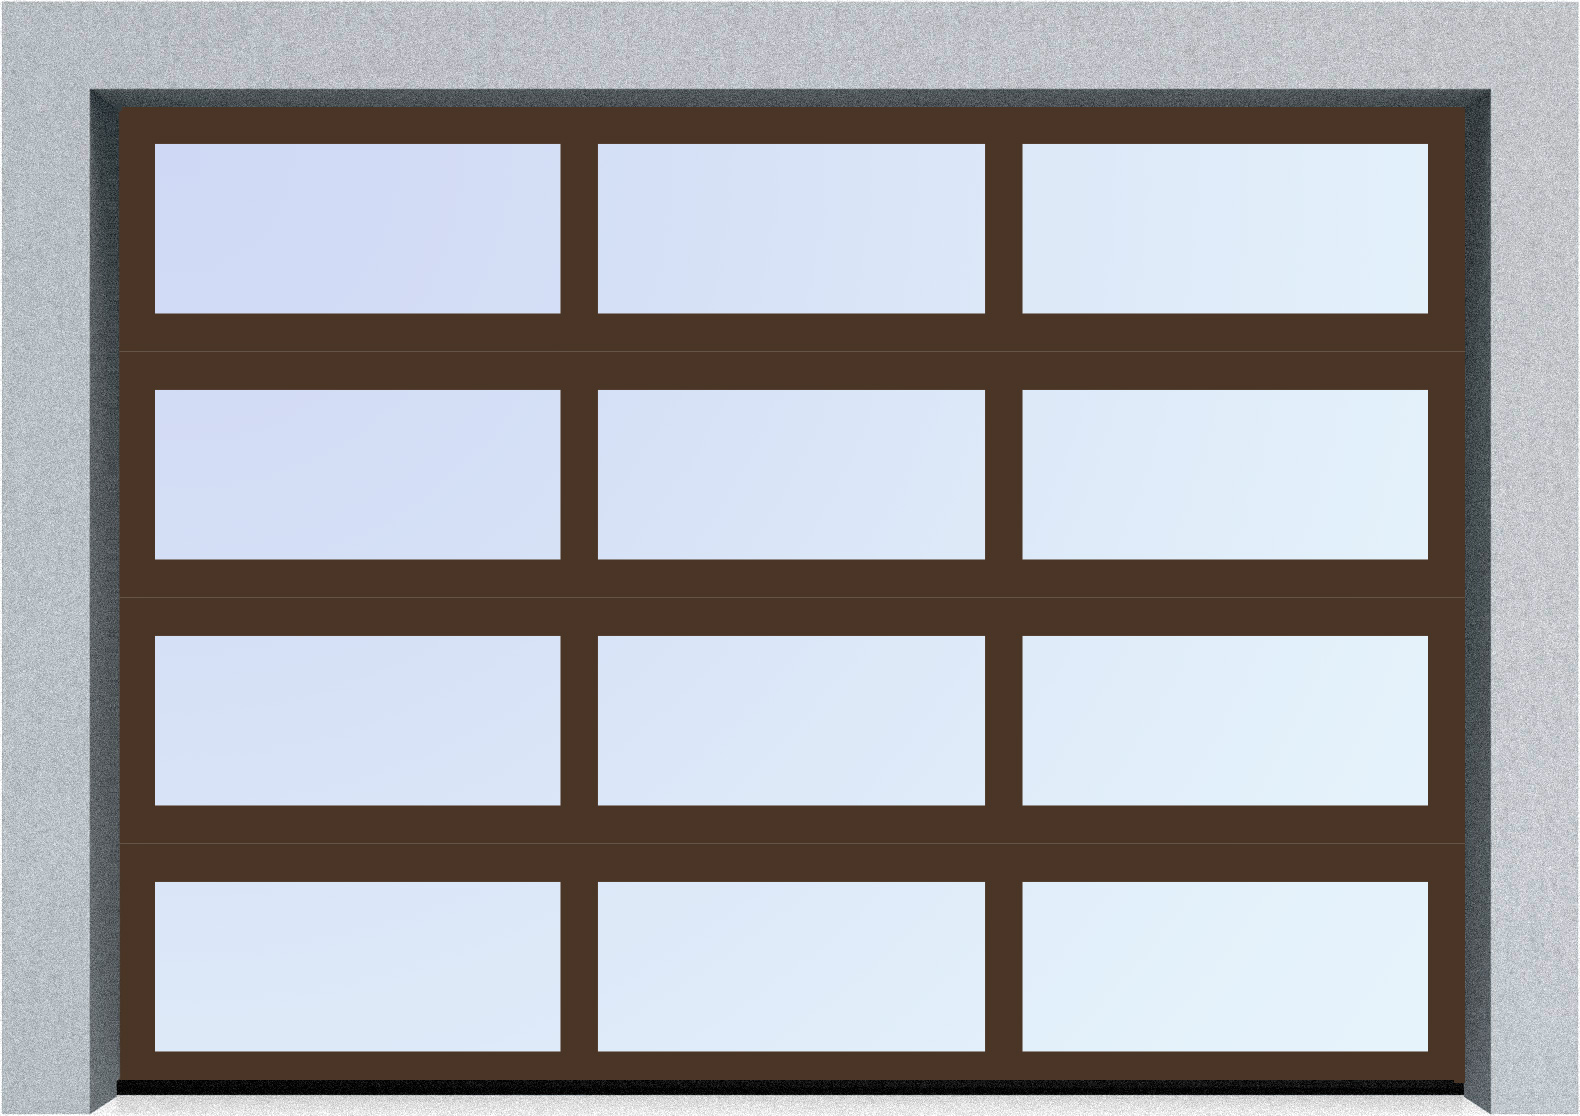  Секционные панорамные ворота серии AluTrend (АЛП) 6500х5500 нижняя панель стандартные цвета, фото 6 